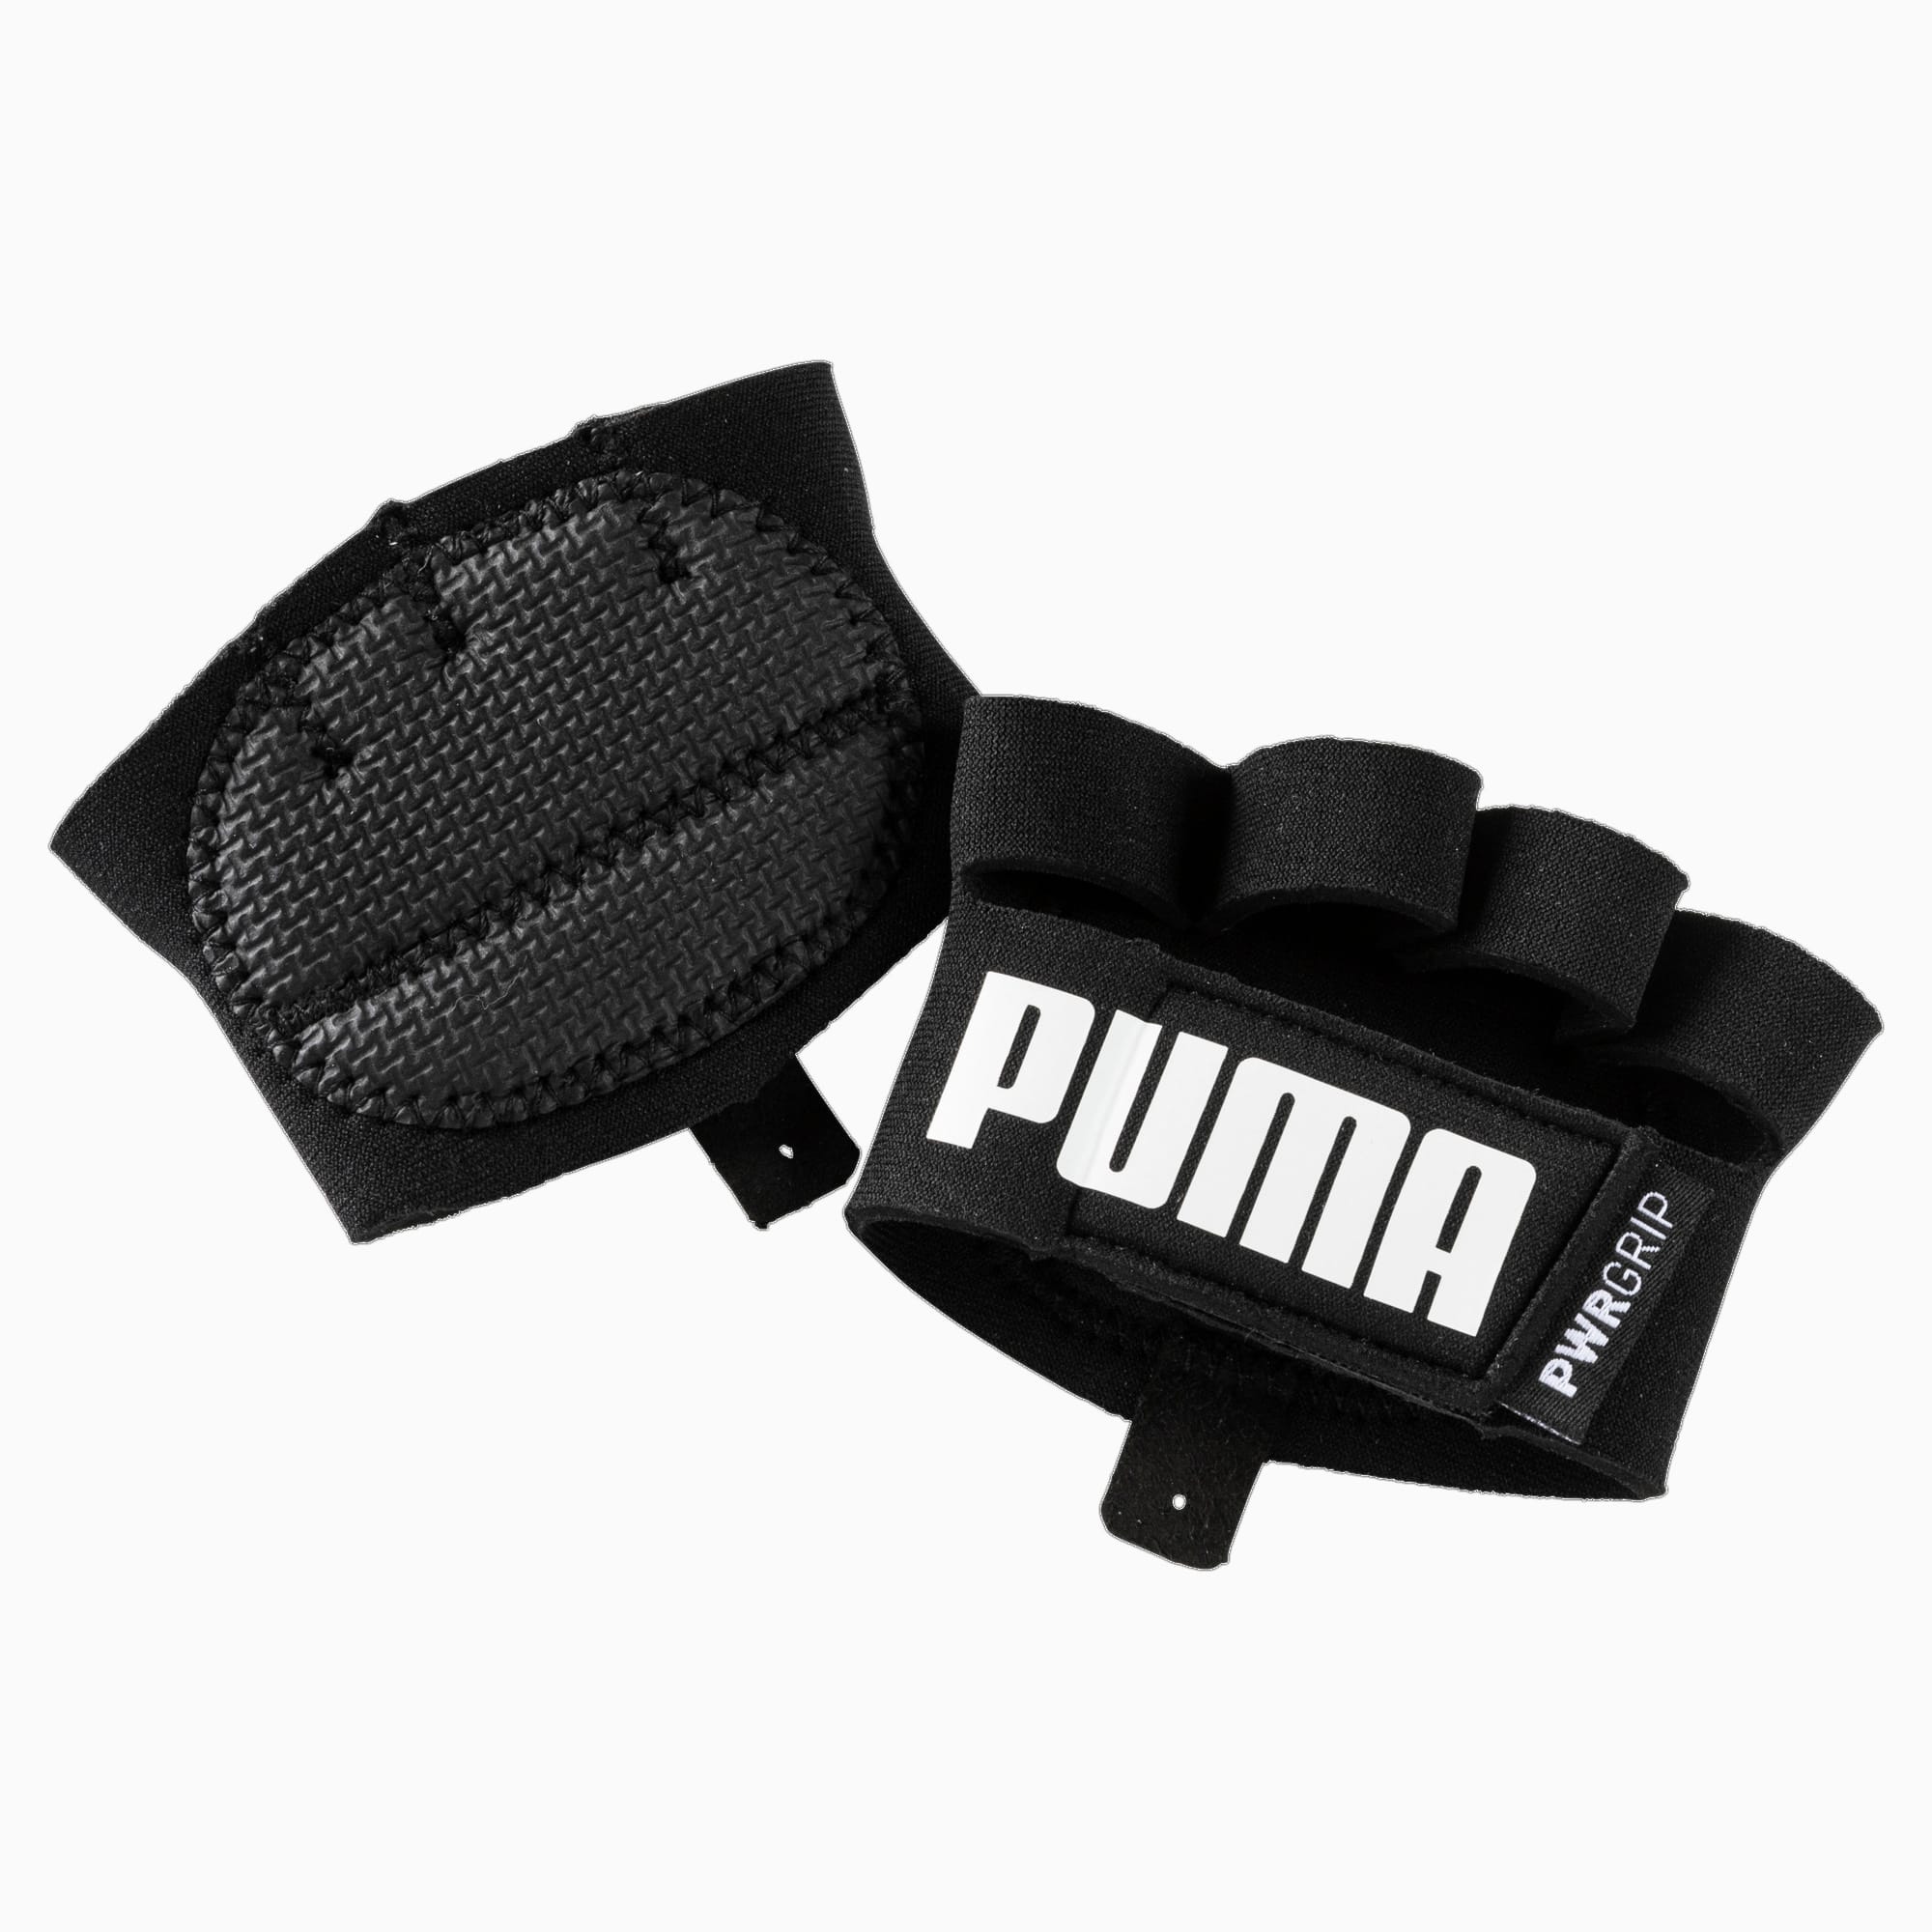 Image of PUMA Training Essential Grip Handschuhe | Mit Aucun | Schwarz/Weiß | Größe: M